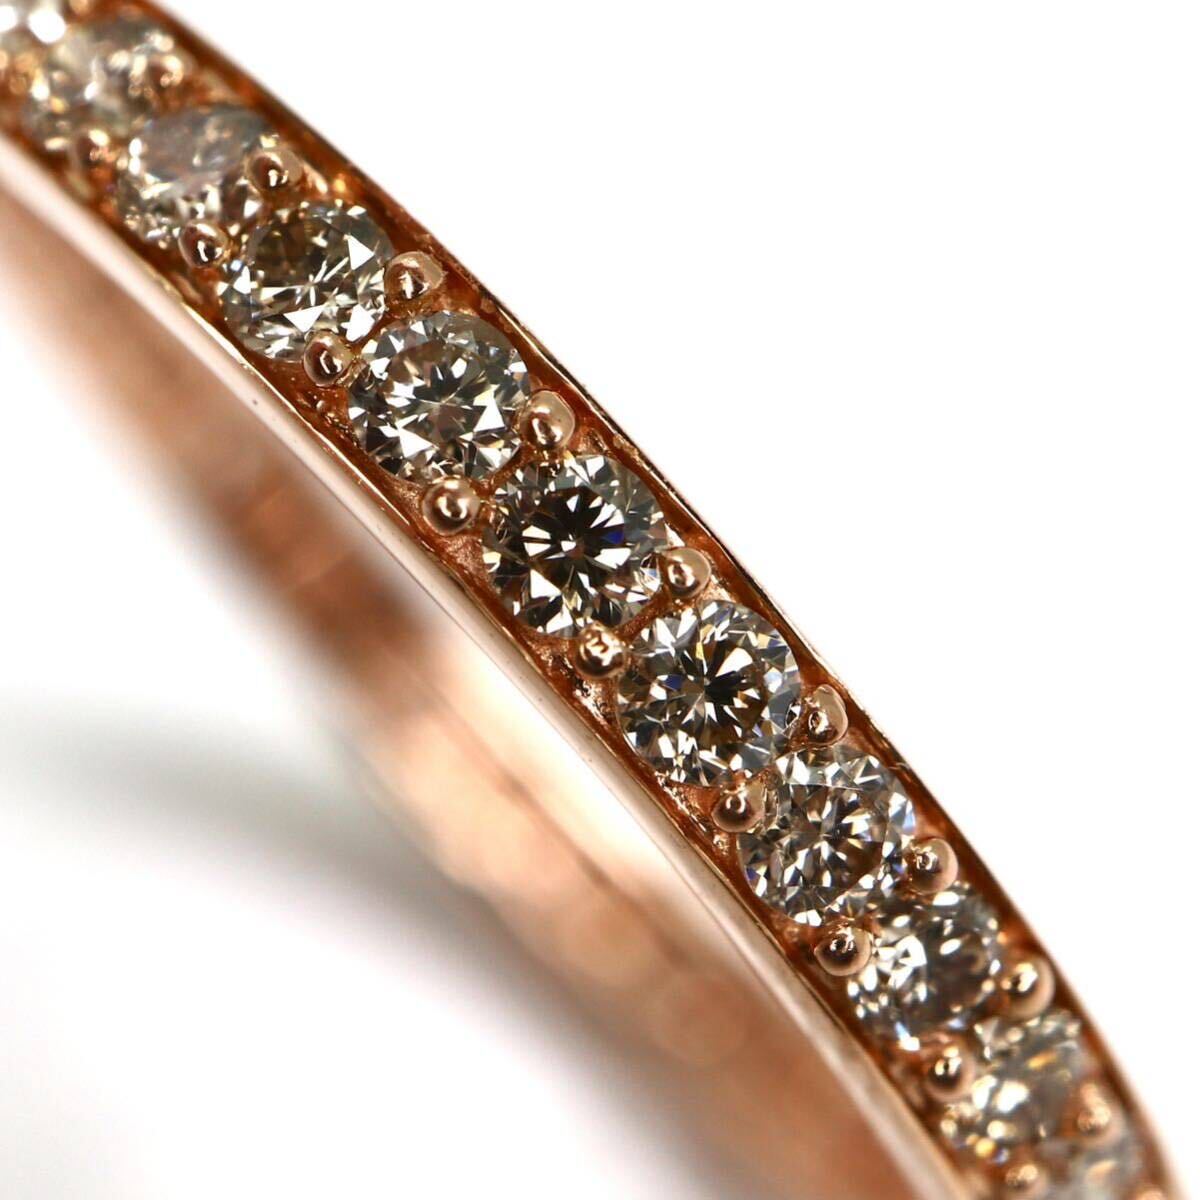 GSTV(ジーエスティーヴィー)《K18 天然ダイヤモンド フルエタニティ リング》A 約1.7g 13号 0.55ct diamond ジュエリー ring 指輪 EB3/EC1の画像4